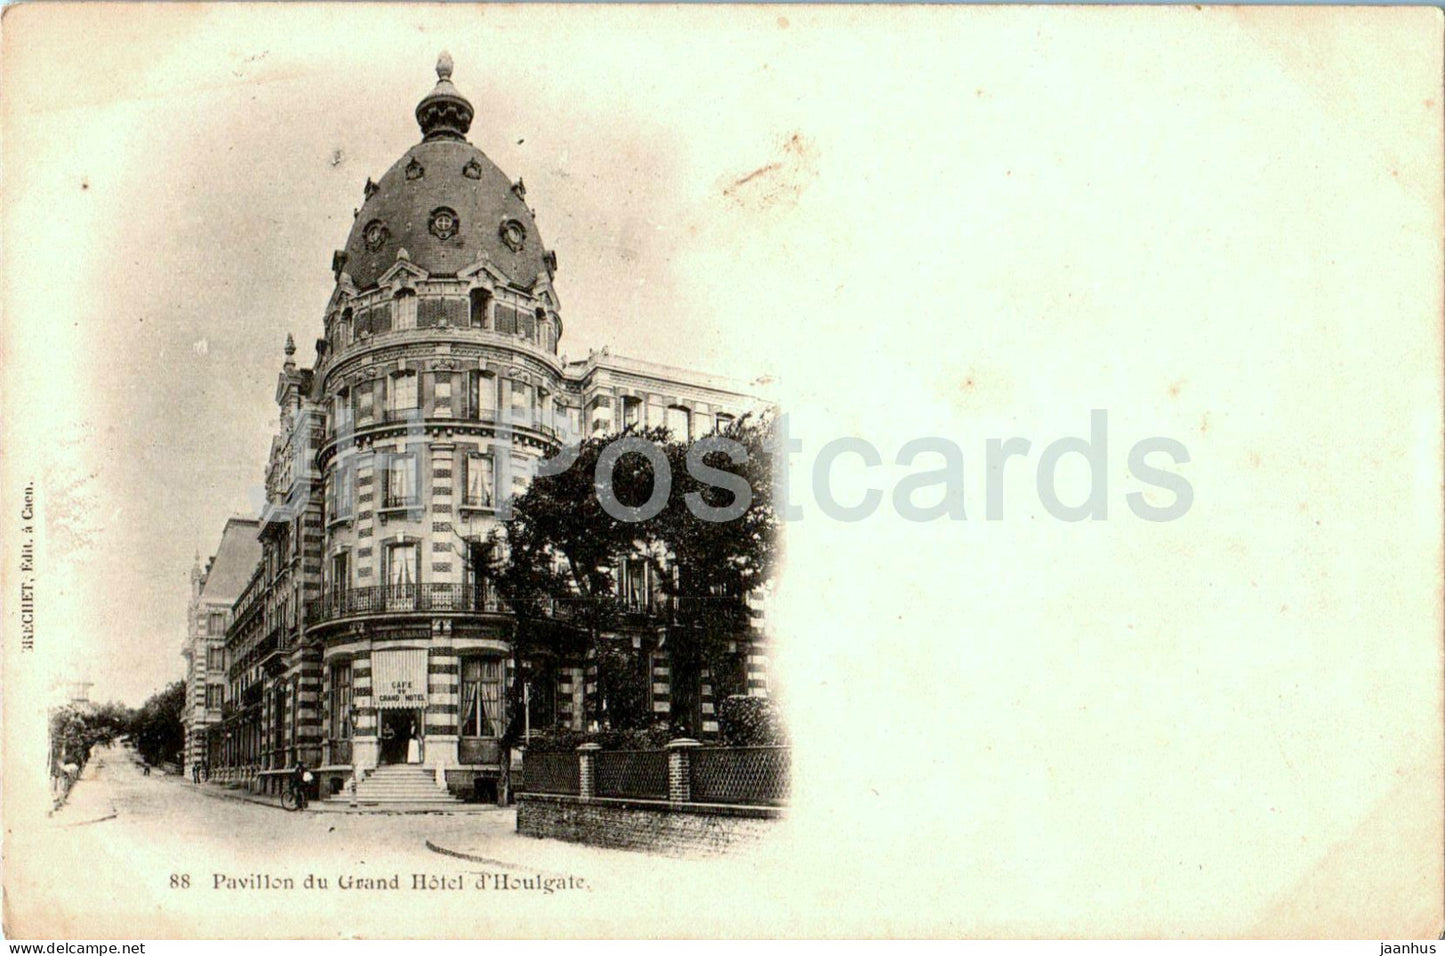 Houlgate - Pavillon du Grand Hotel d'Houlgate - 88 - old postcard - France - unused - JH Postcards